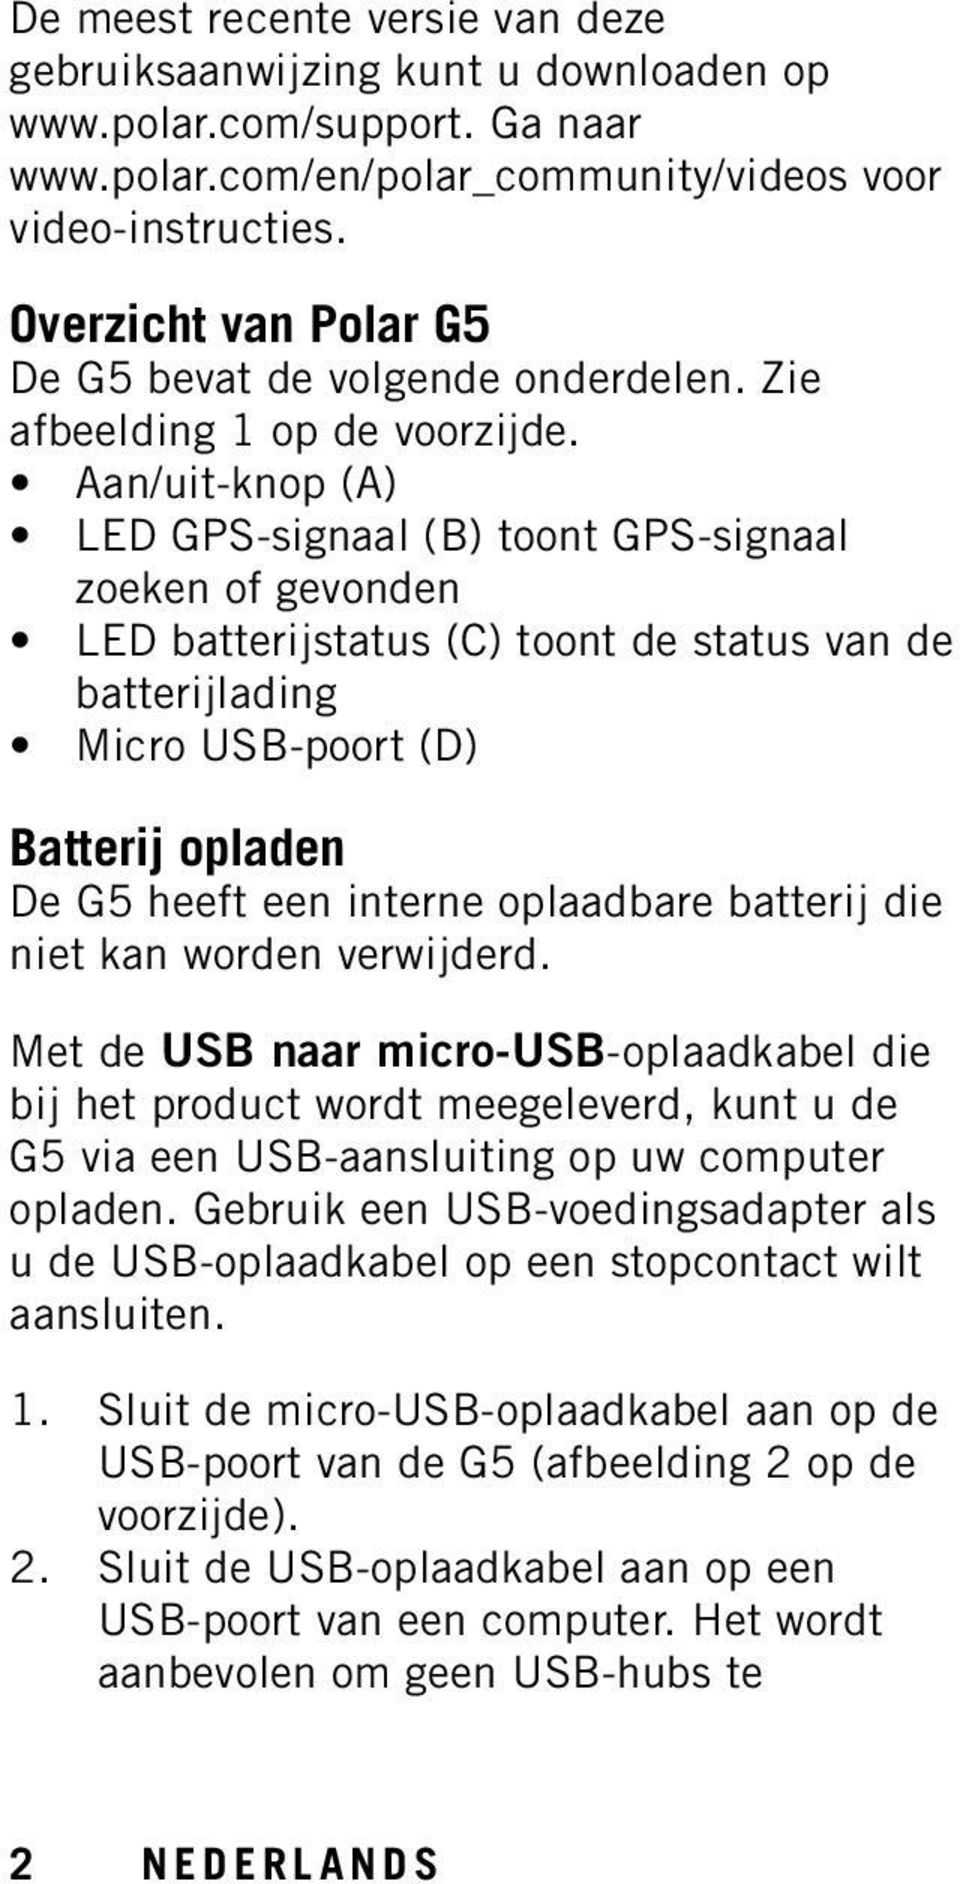 Aan/uit-knop (A) LED GPS-signaal (B) toont GPS-signaal zoeken of gevonden LED batterijstatus (C) toont de status van de batterijlading Micro USB-poort (D) Batterij opladen De G5 heeft een interne